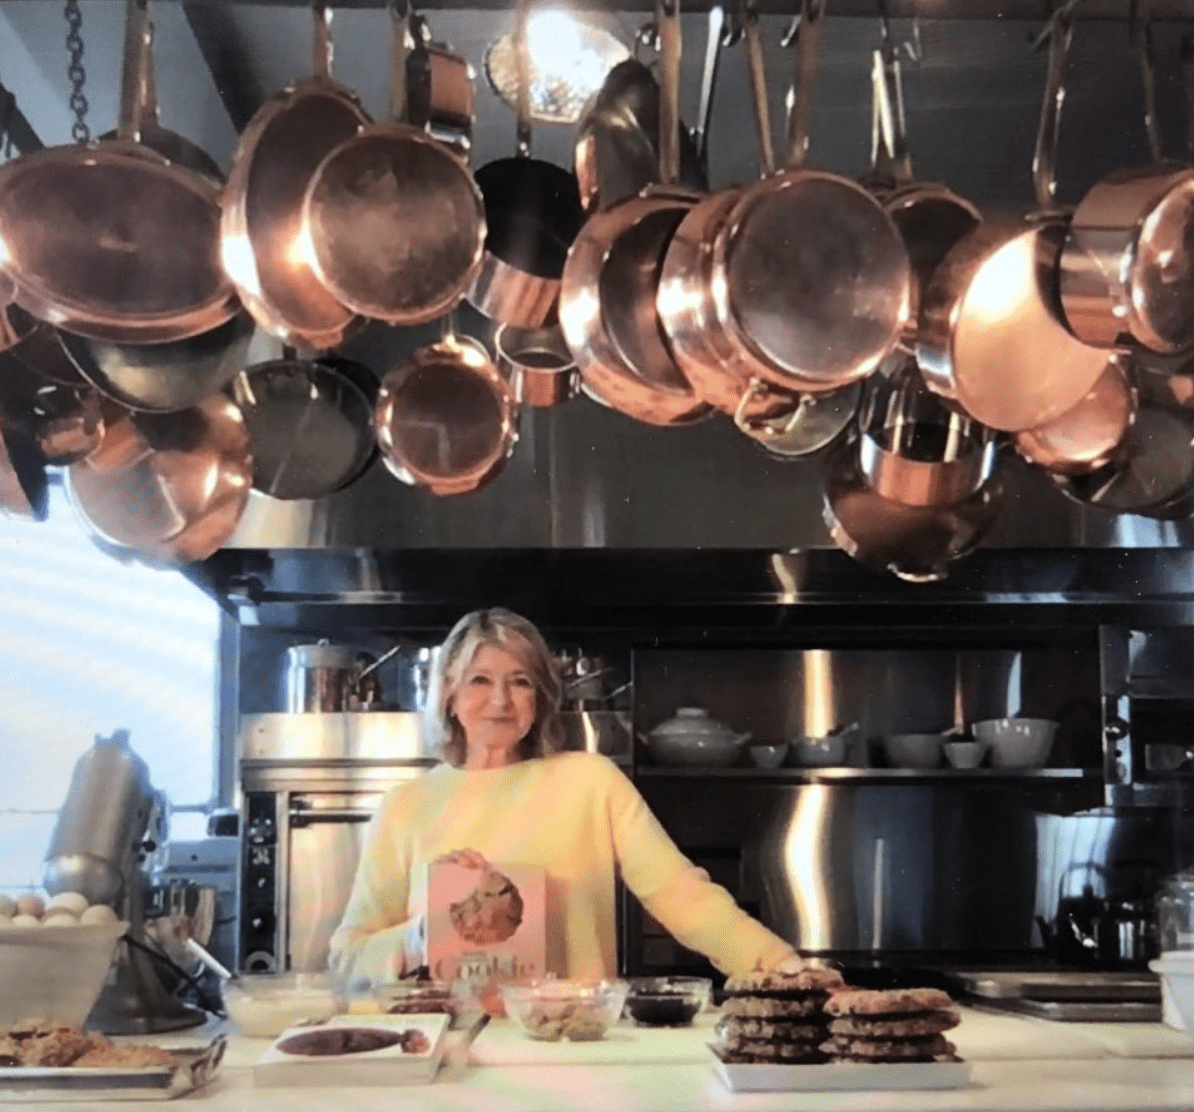 Salsa Lizano es de los condimentos favoritos de la afamada presentadora de cocina Martha Stewart